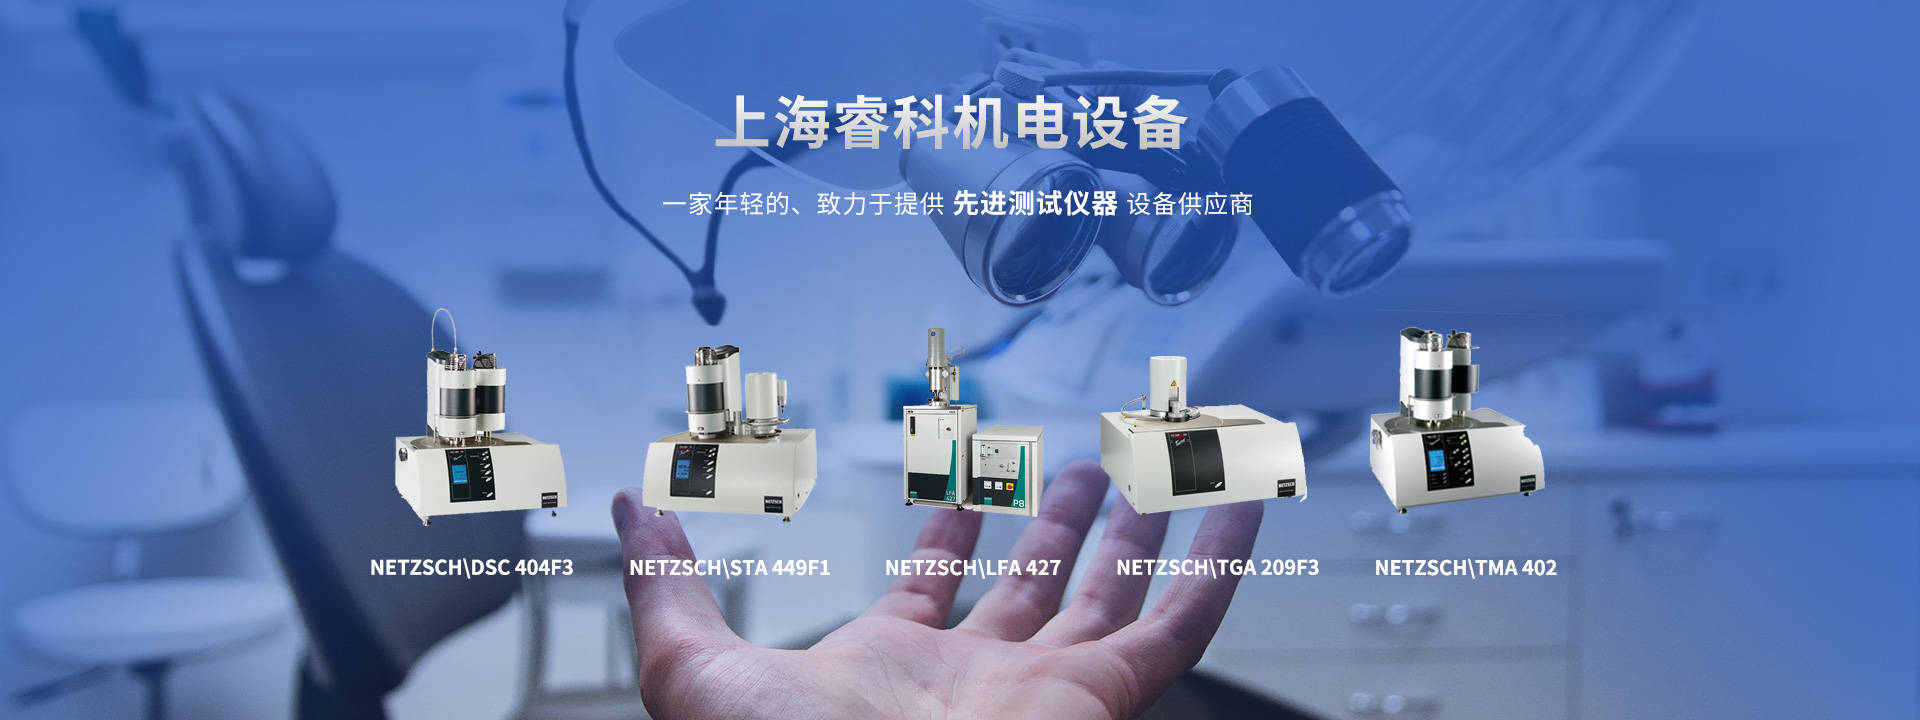 上海睿科机电工业德国耐驰公司的热分析仪器